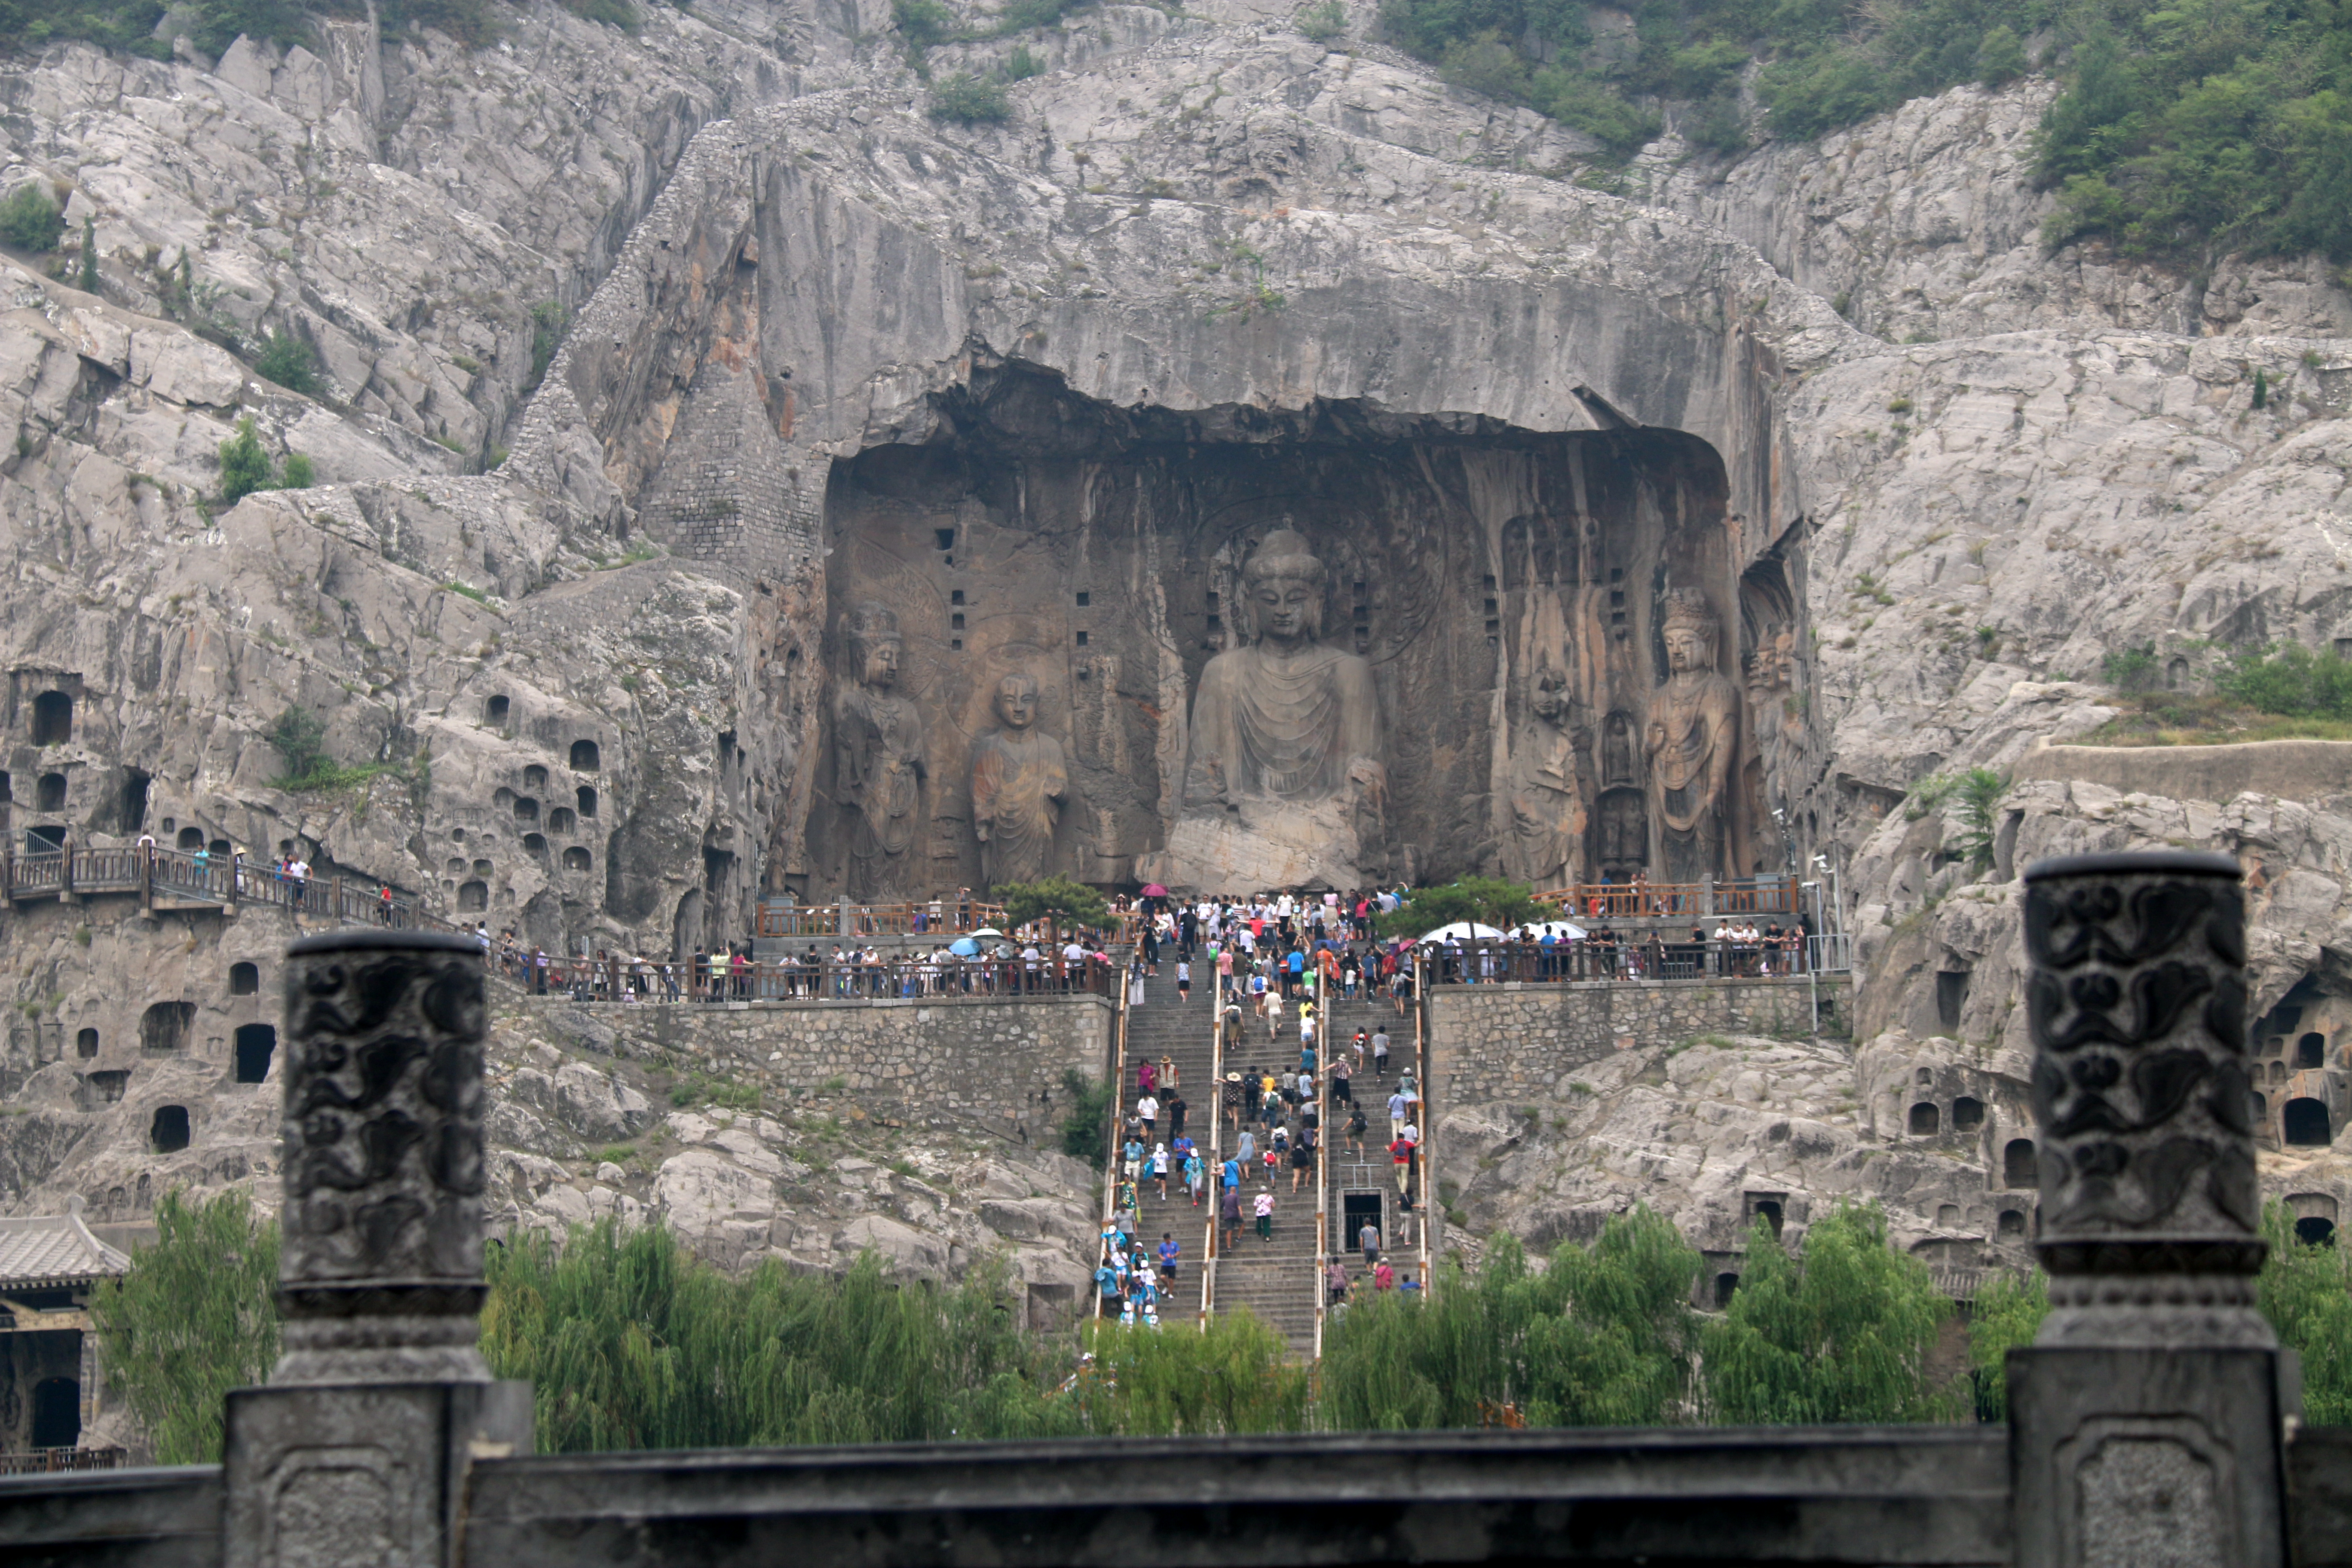 洛阳龙门石窟景区，每年暑假都是旅游旺季，自驾游朋友一定要注意